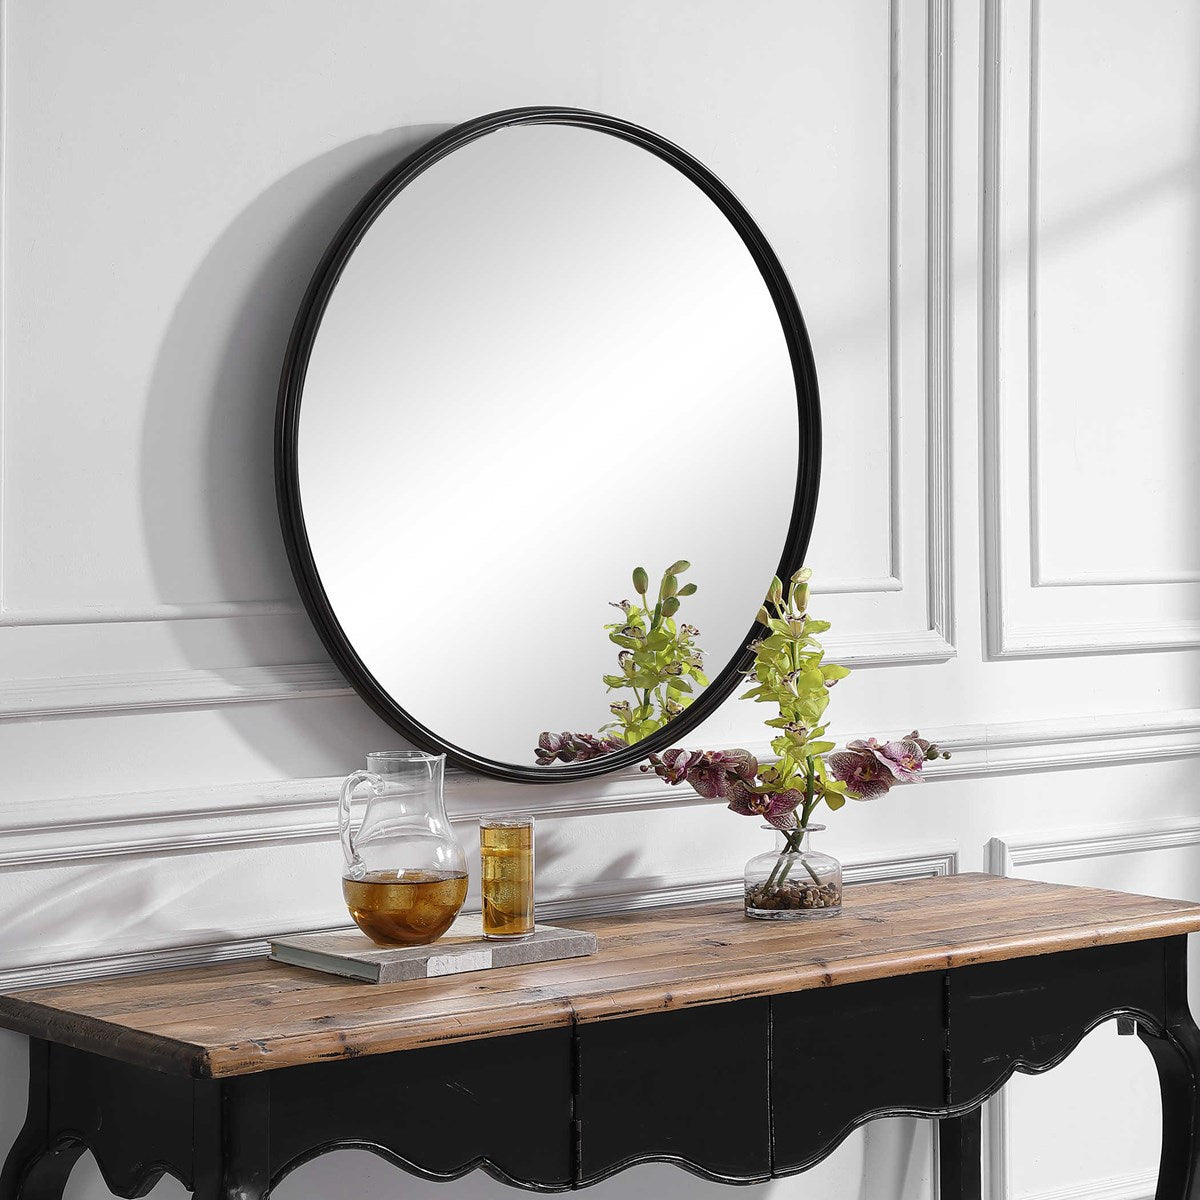 Aged black round mirror